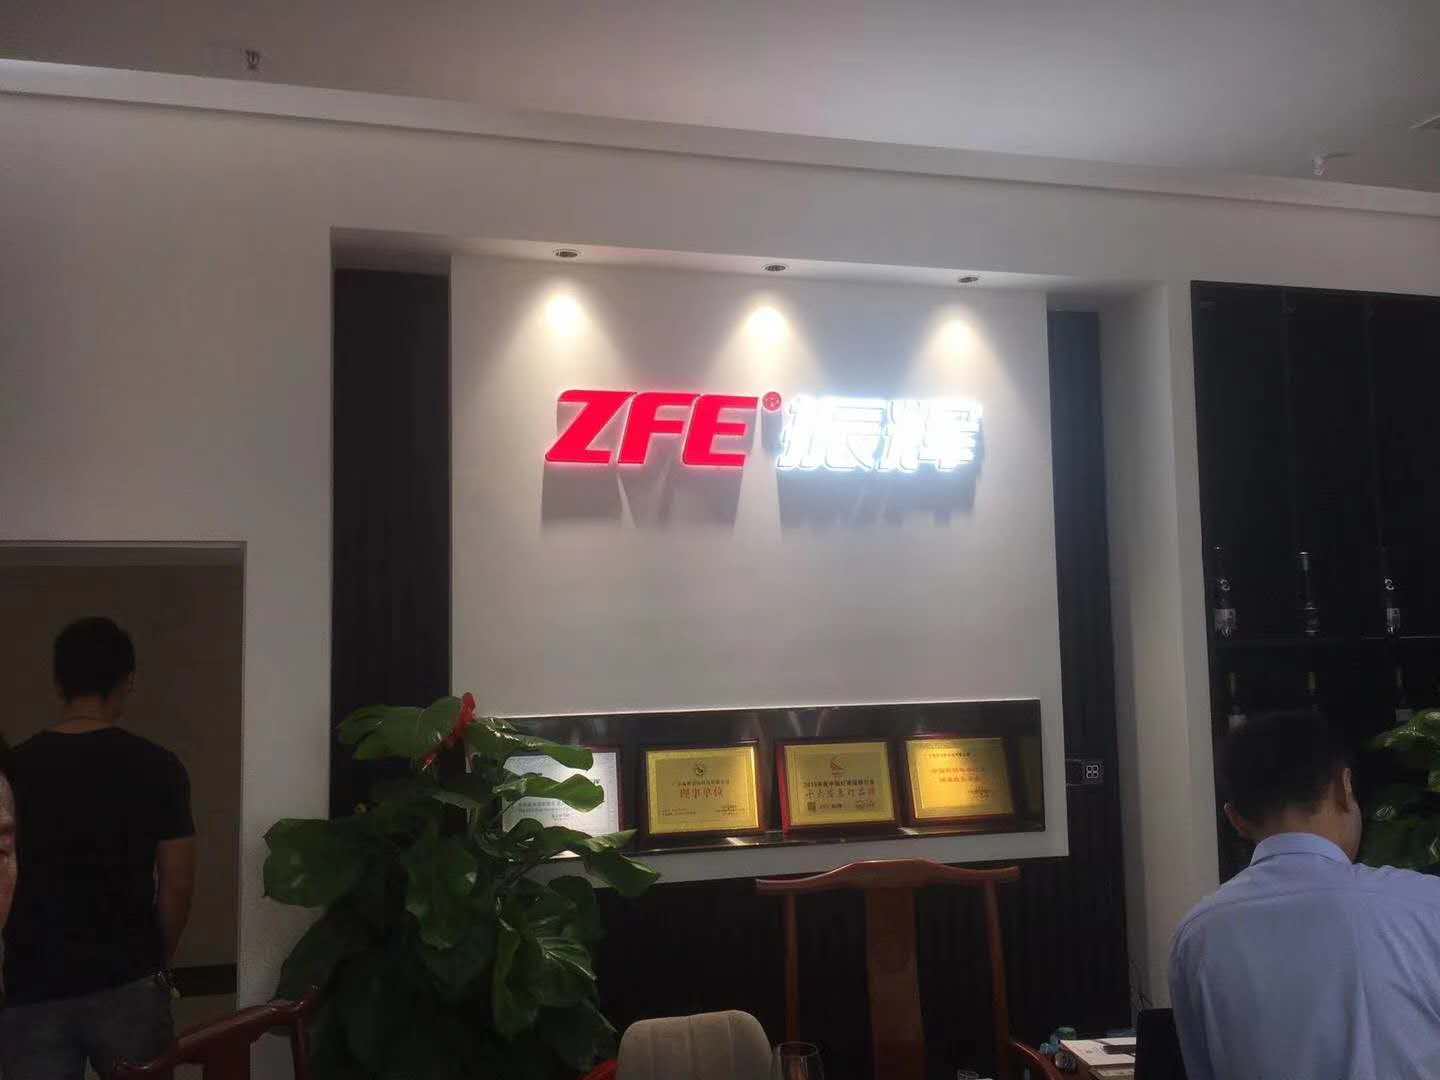 Compañía ZFE - tienda Guzhen el 9 de octubre, operación de prueba, bienvenido a visitar negociaciones comerciales